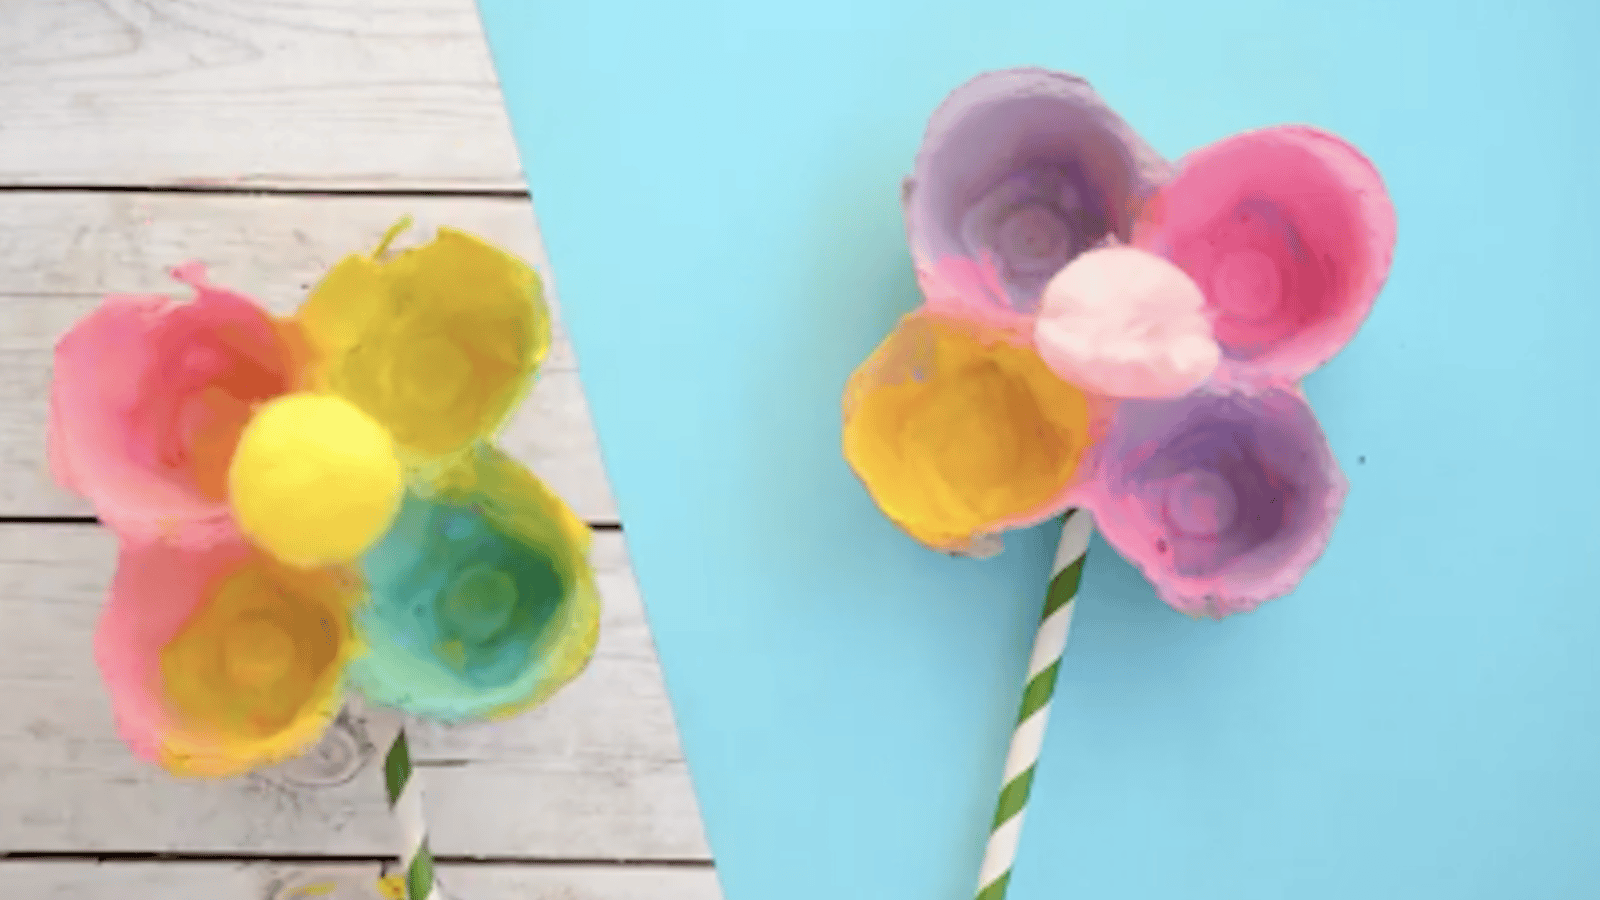 Bricolage printanier pour les enfants: des fleurs colorées en boites d'oeufs